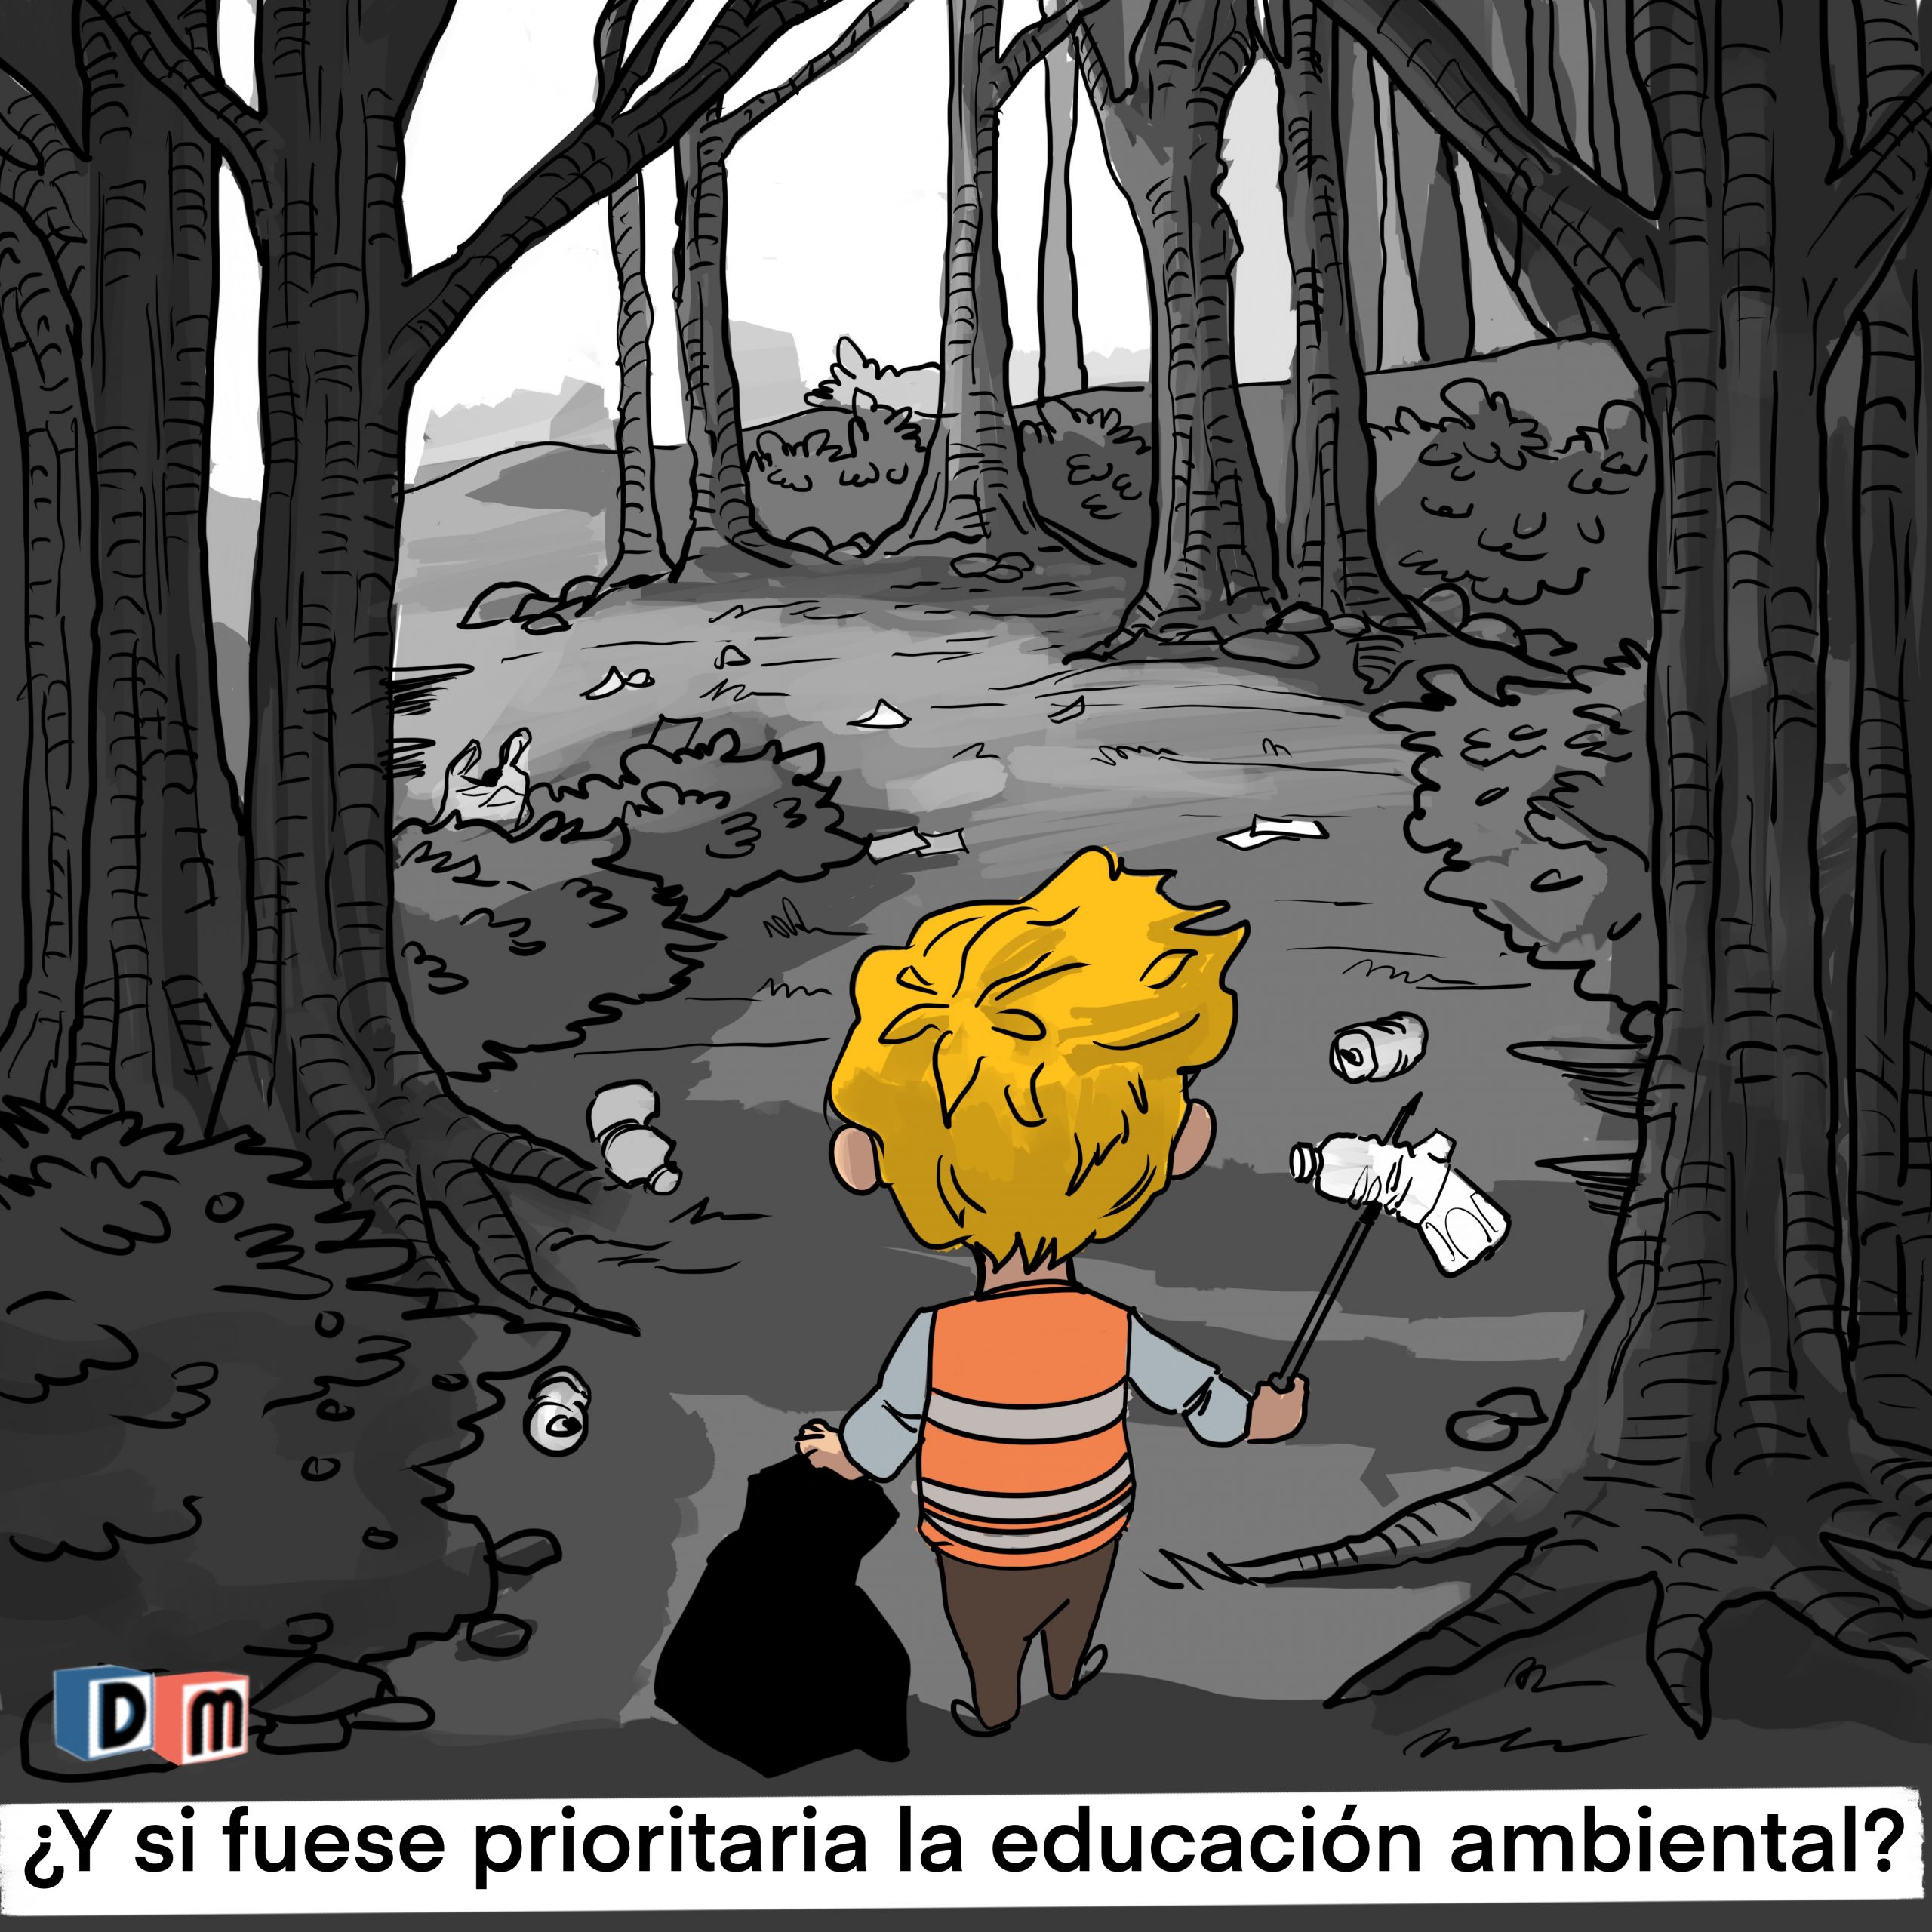 David Mora_Viñeta 19_¿Y si fuese prioritaria la educación ambiental?